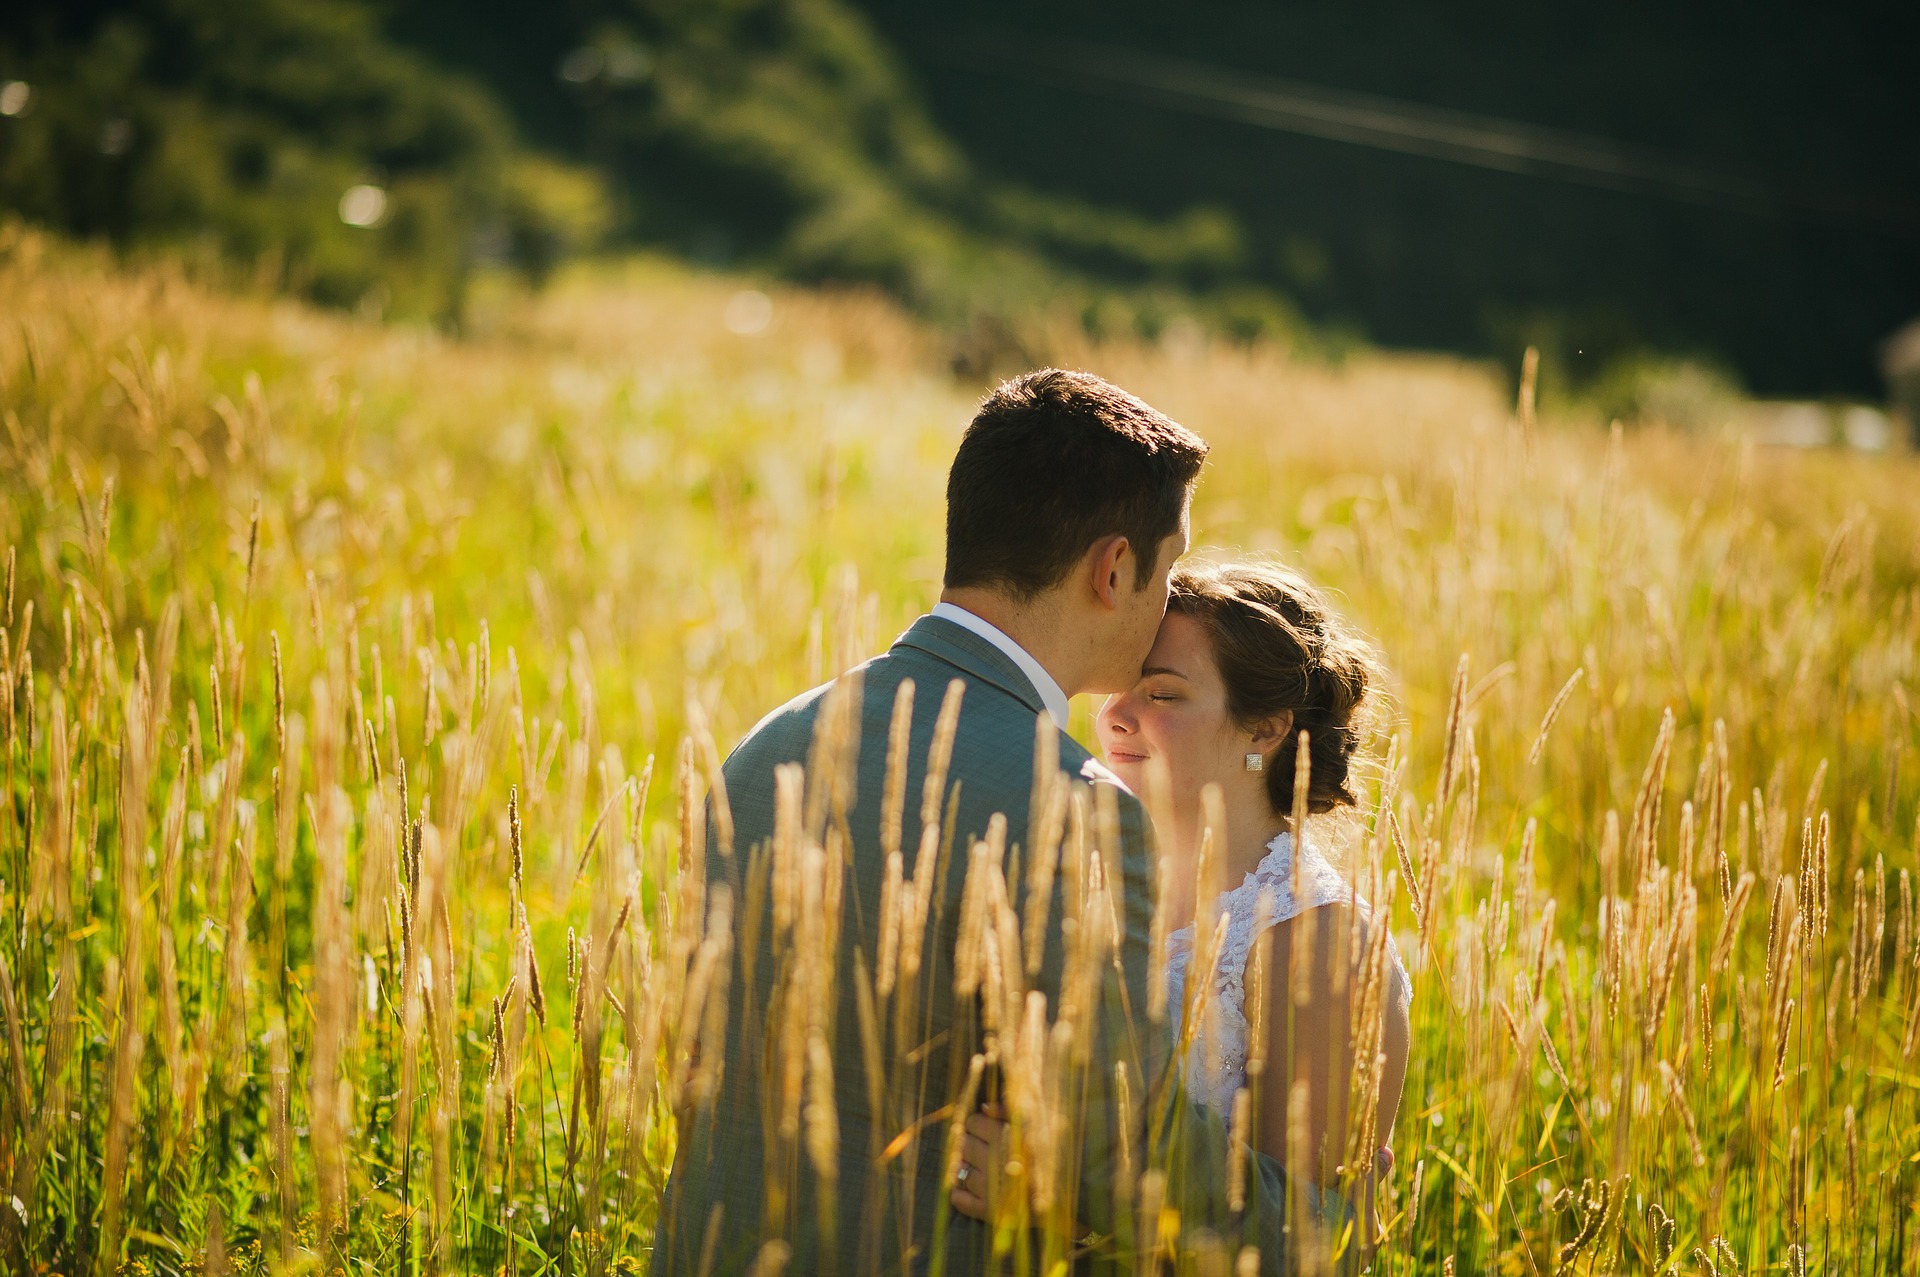 trên cánh đồng bát ngát cỏ cây; đôi bạn trẻ đang trao nhau lời ước hẹn trăm năm hạnh phúc.